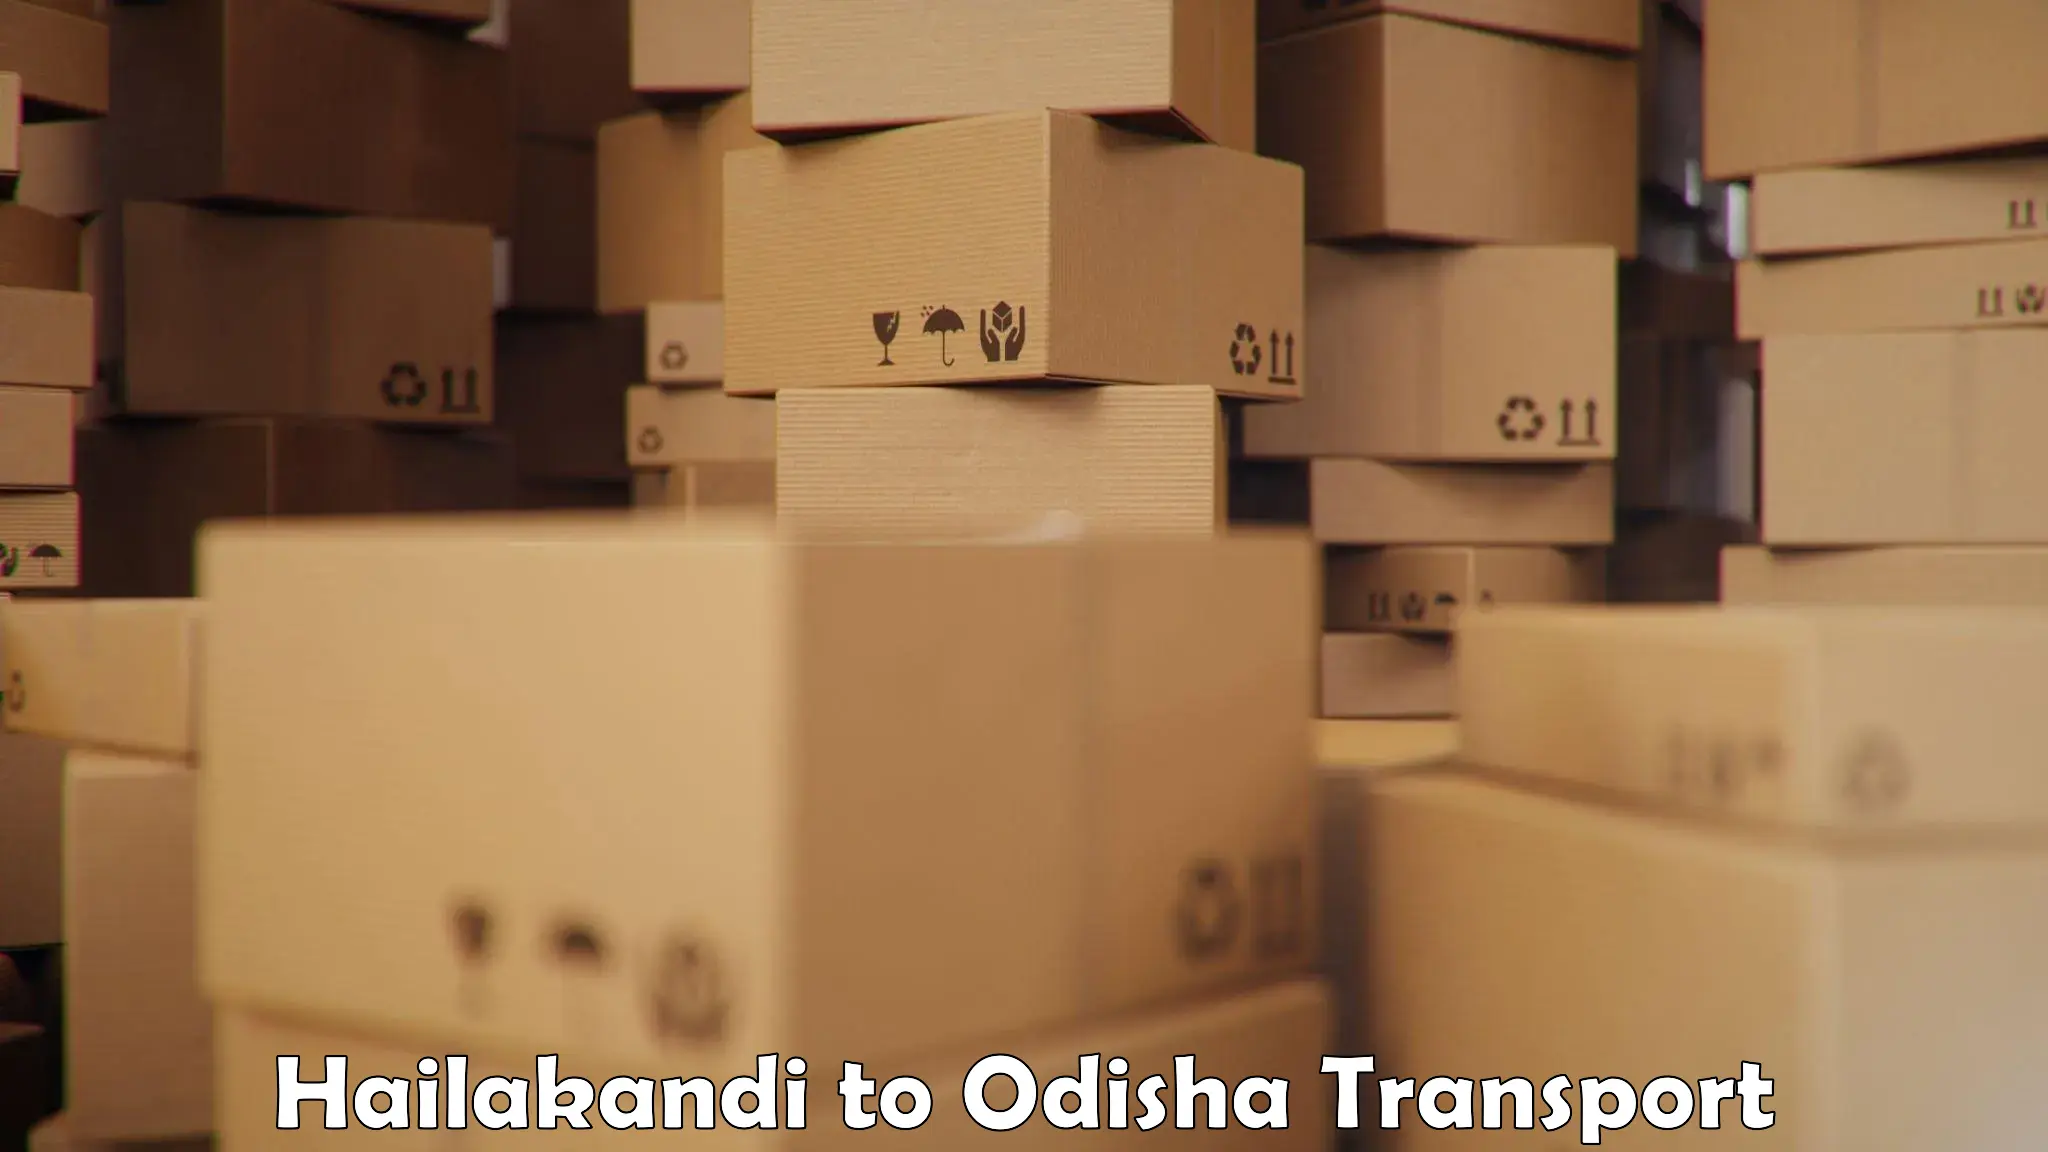 Part load transport service in India Hailakandi to Nuapada